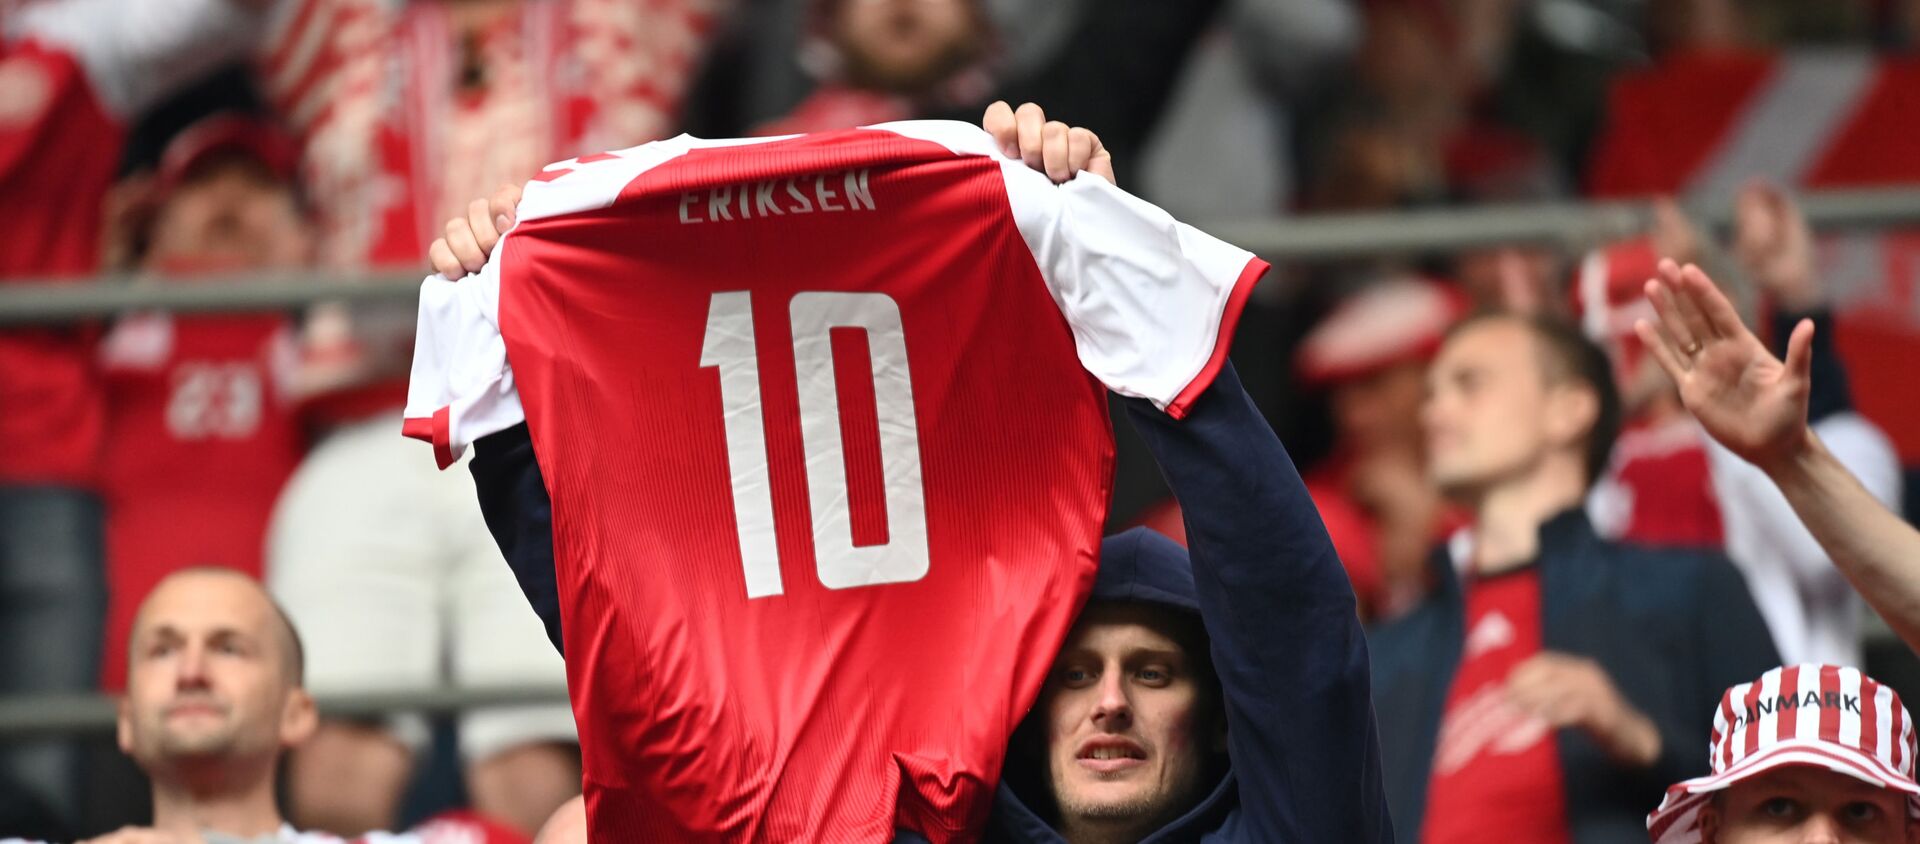 أحد مشجعي منتخب الدنمارك يرفع قميص اللاعب كريستيان إريكسن - سبوتنيك عربي, 1920, 12.06.2021